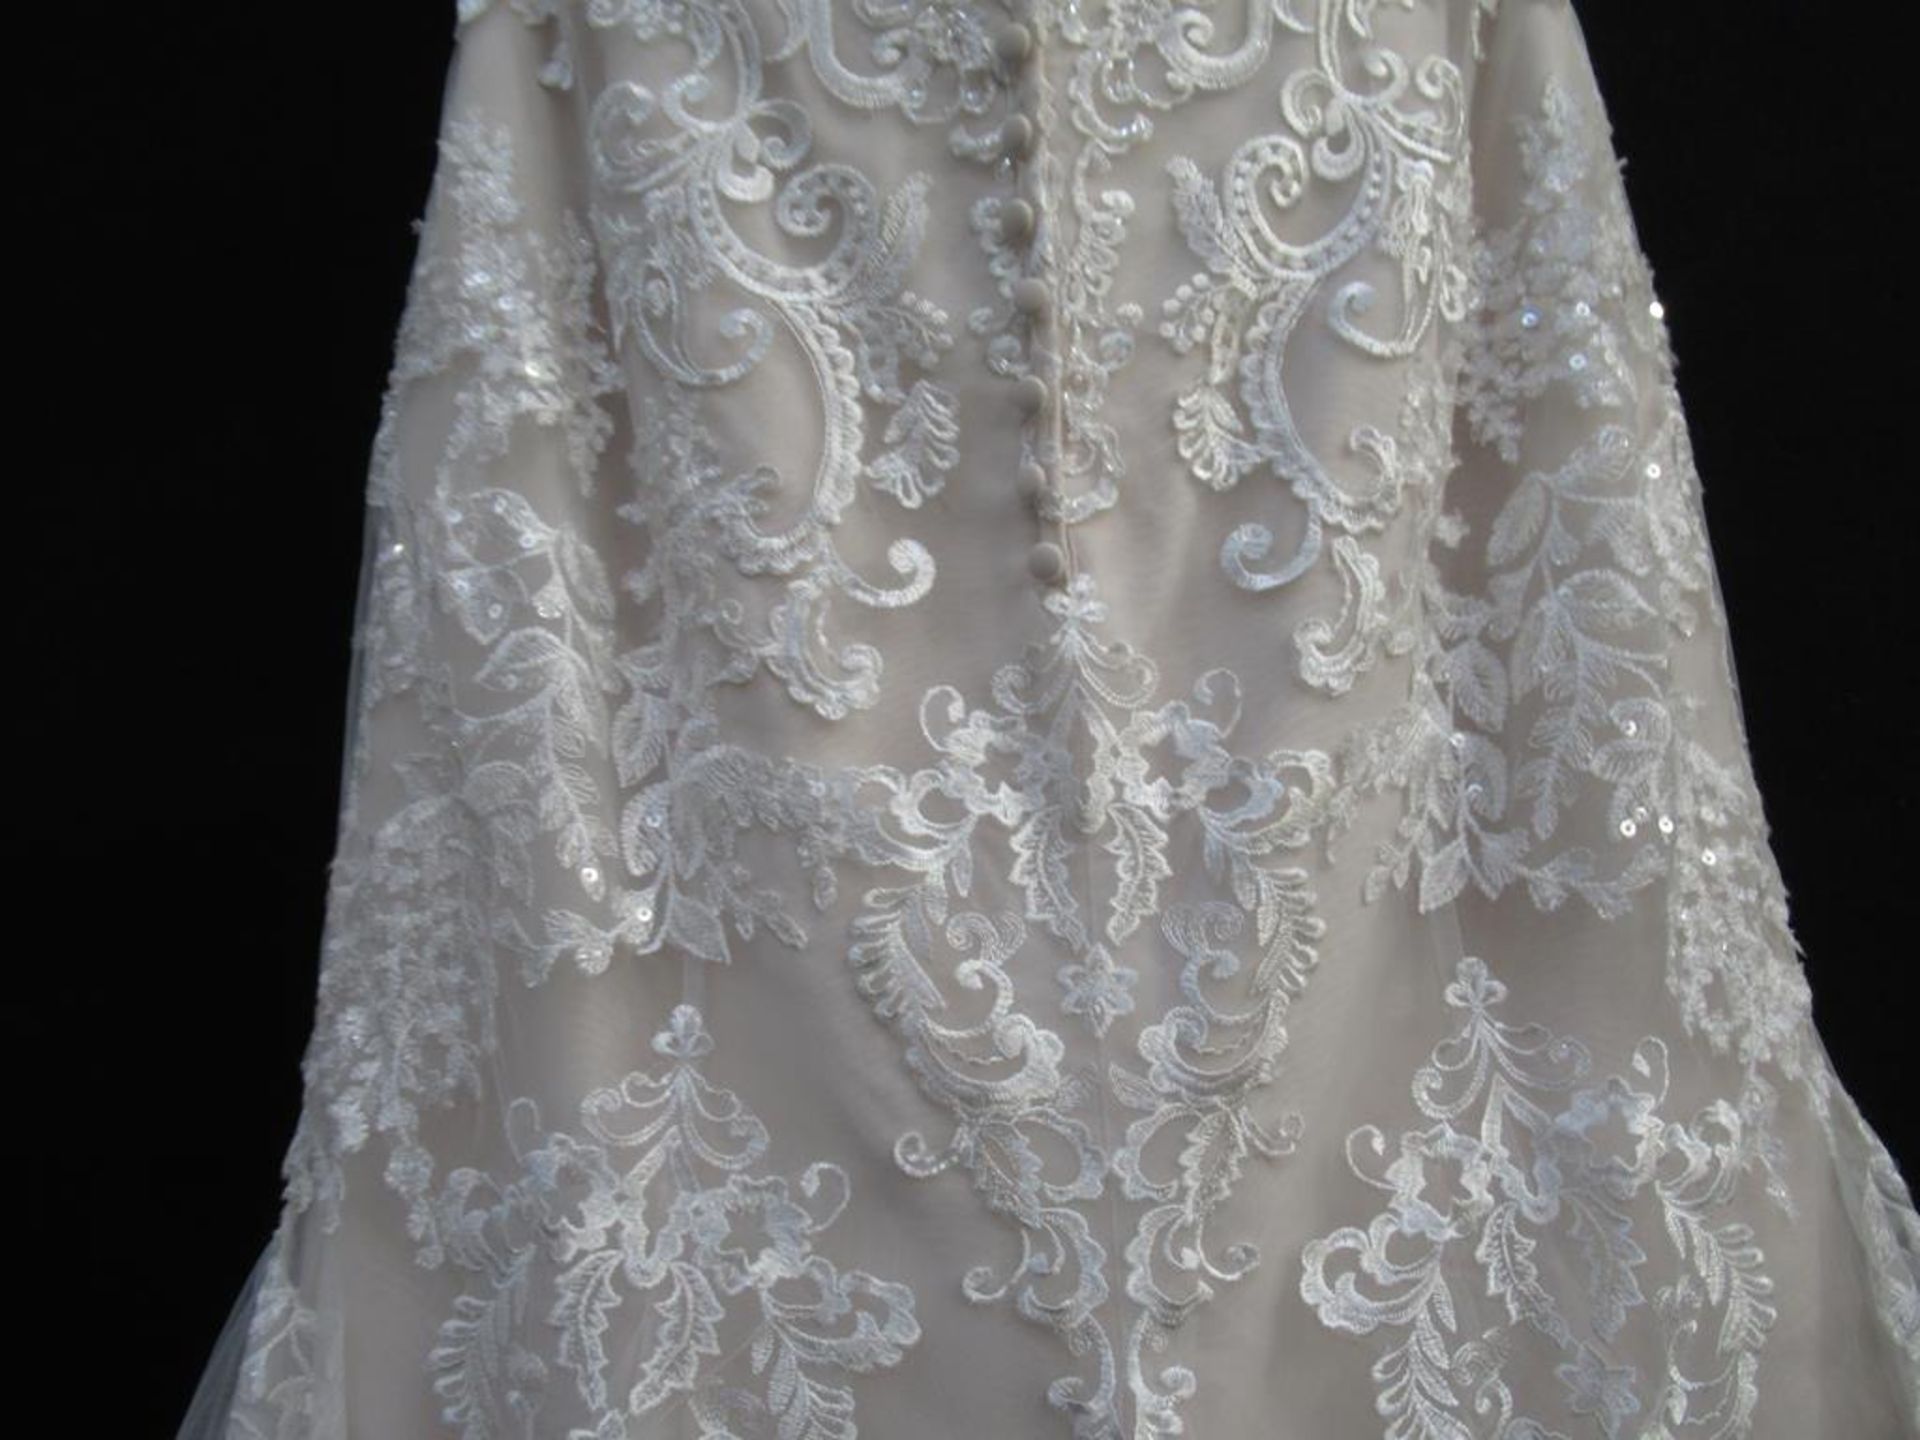 Stella York wedding dress - Bild 10 aus 13